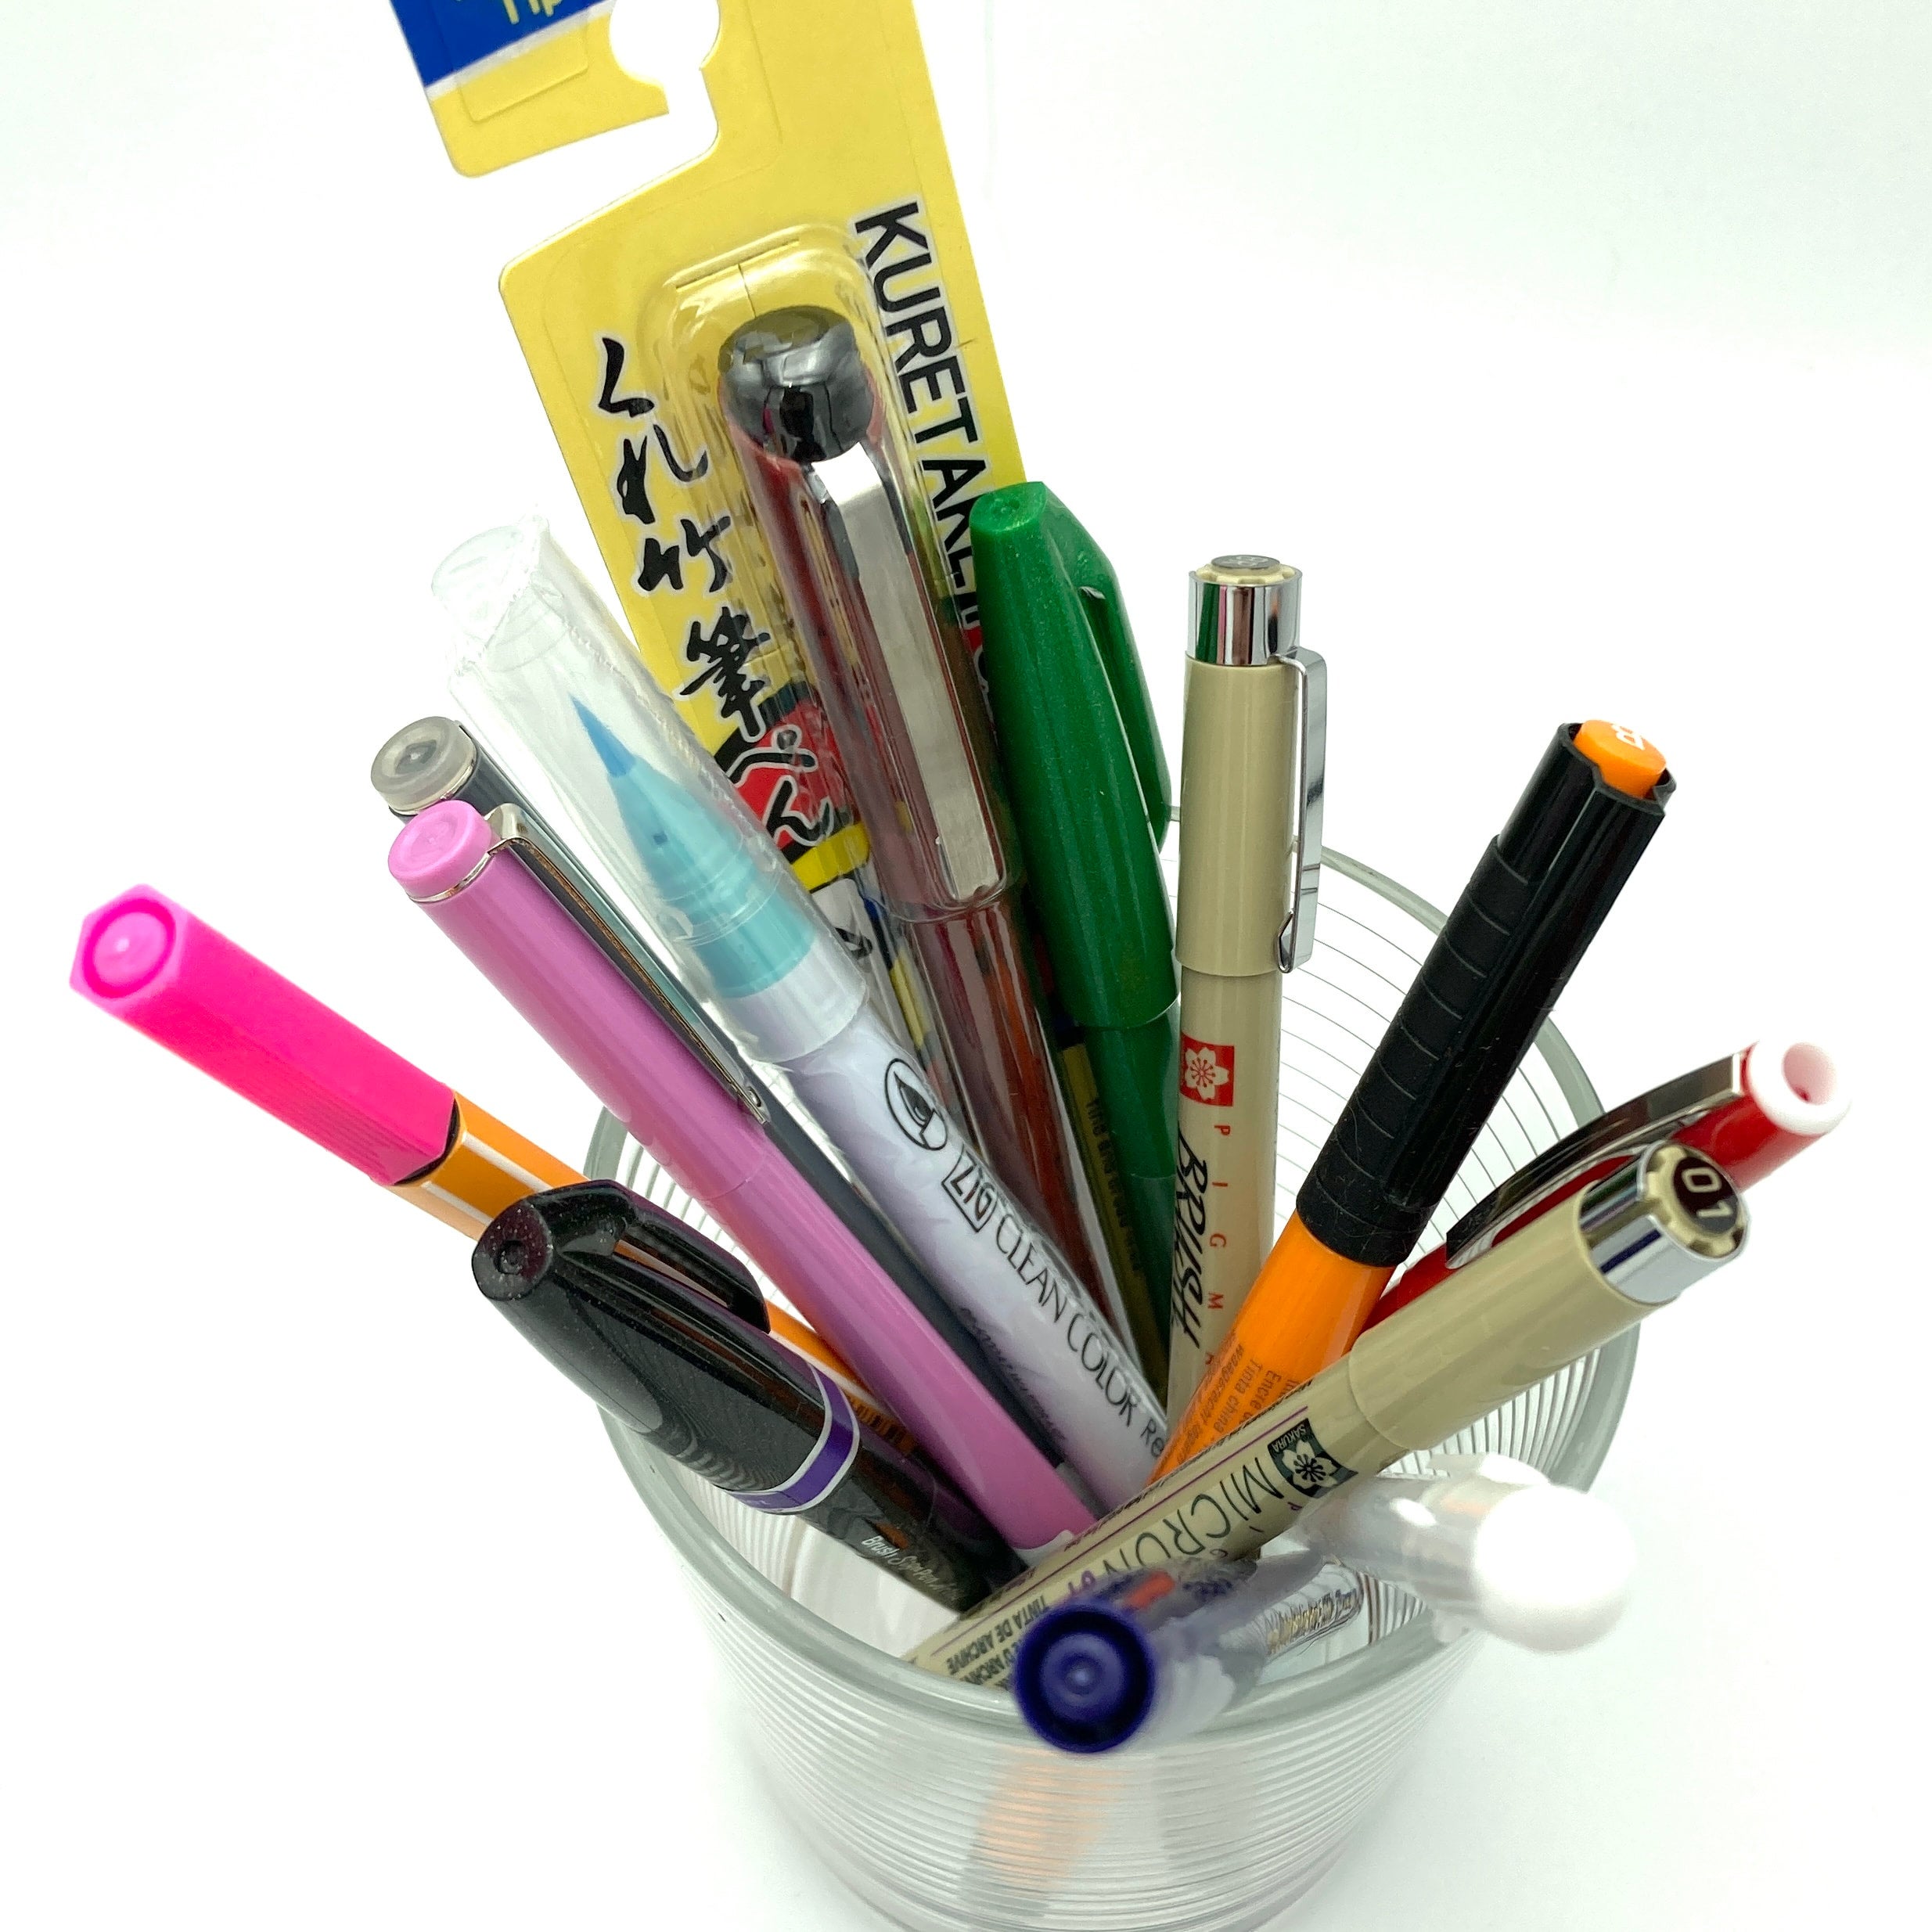 Doodle Pen (Brush Pen) for art #stationery #art #doodleart 